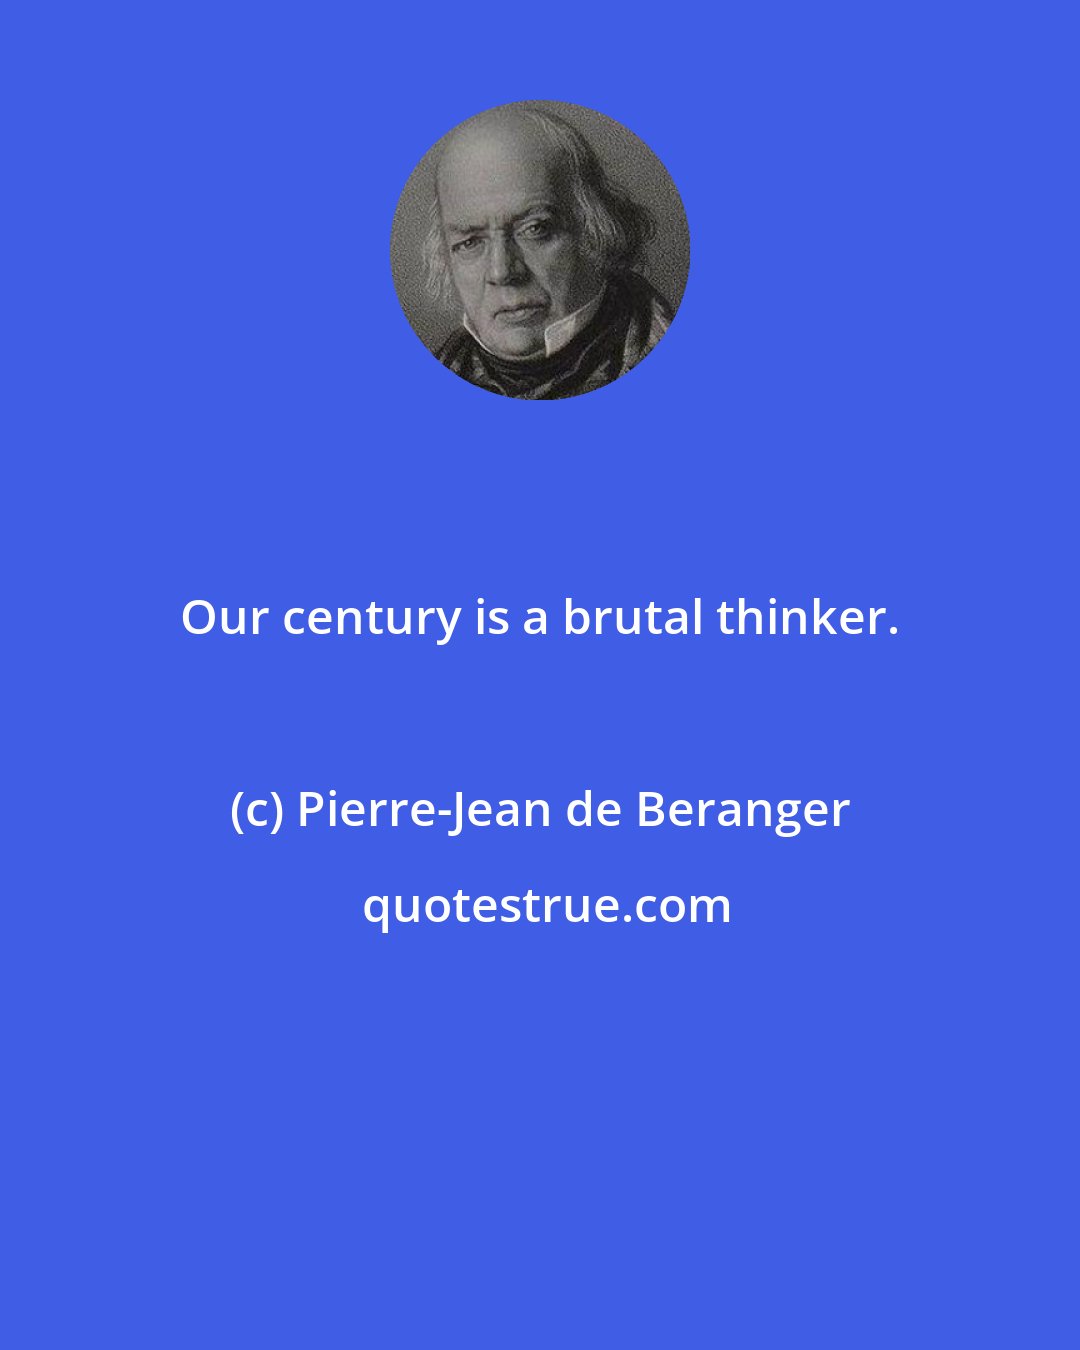 Pierre-Jean de Beranger: Our century is a brutal thinker.